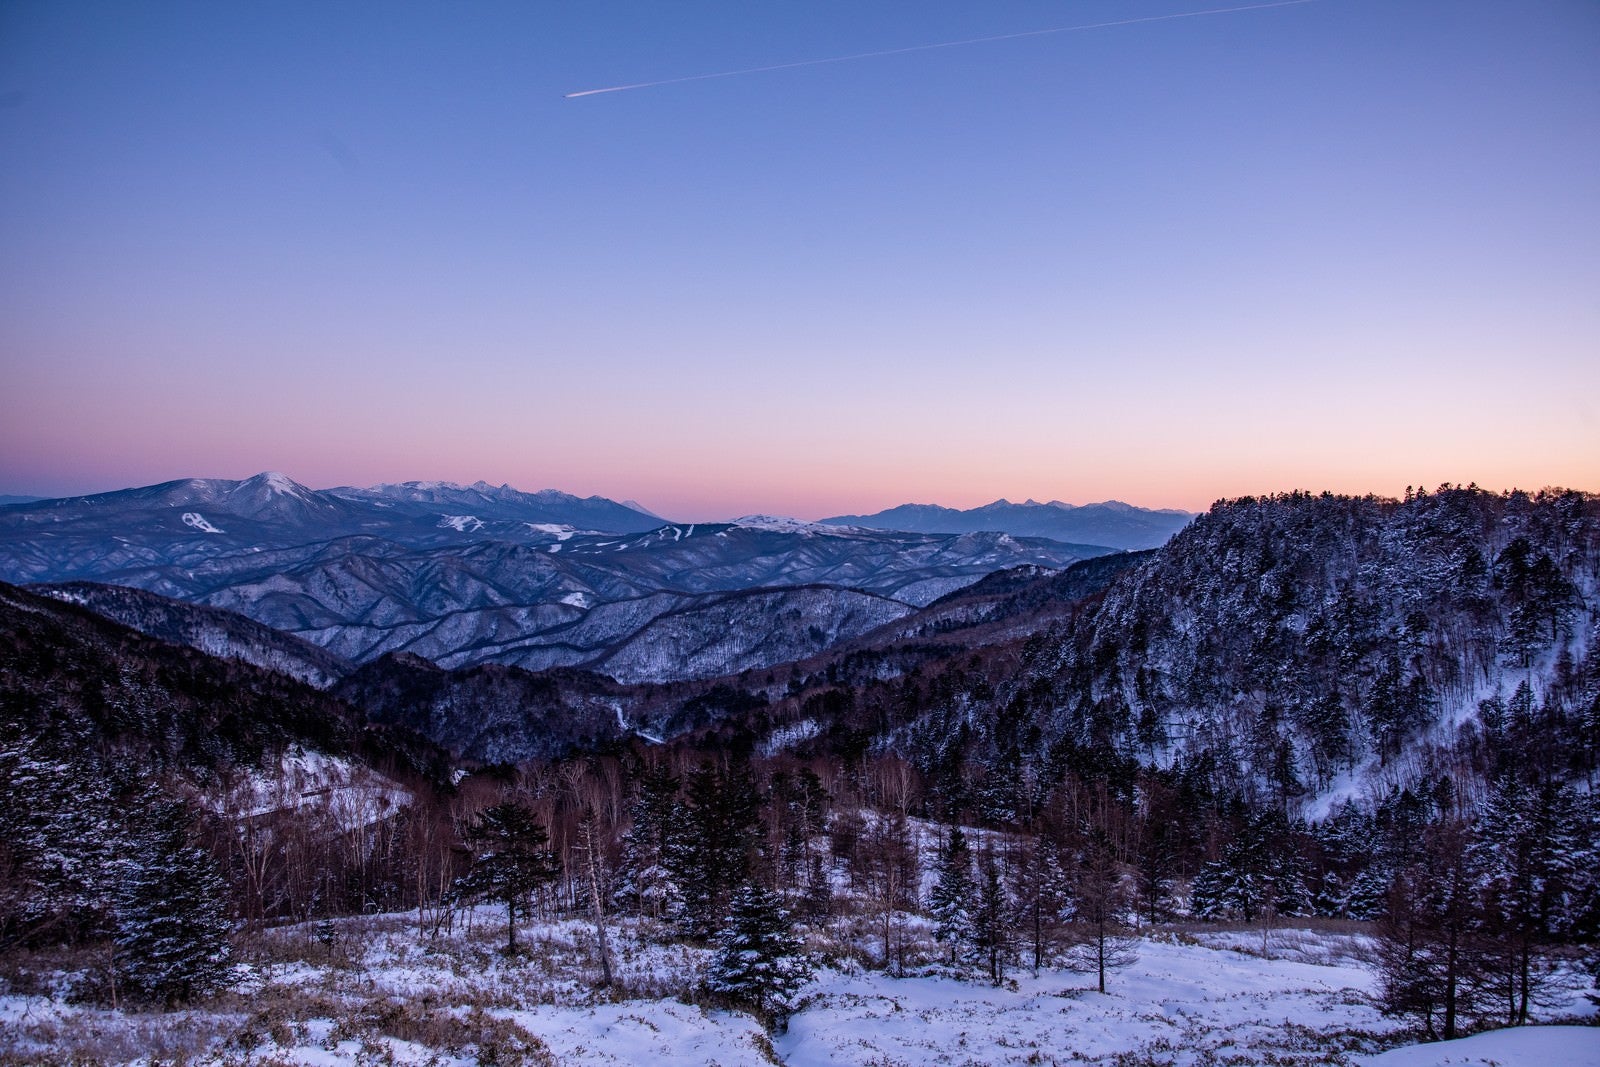 「夕暮れの空と雪山」の写真